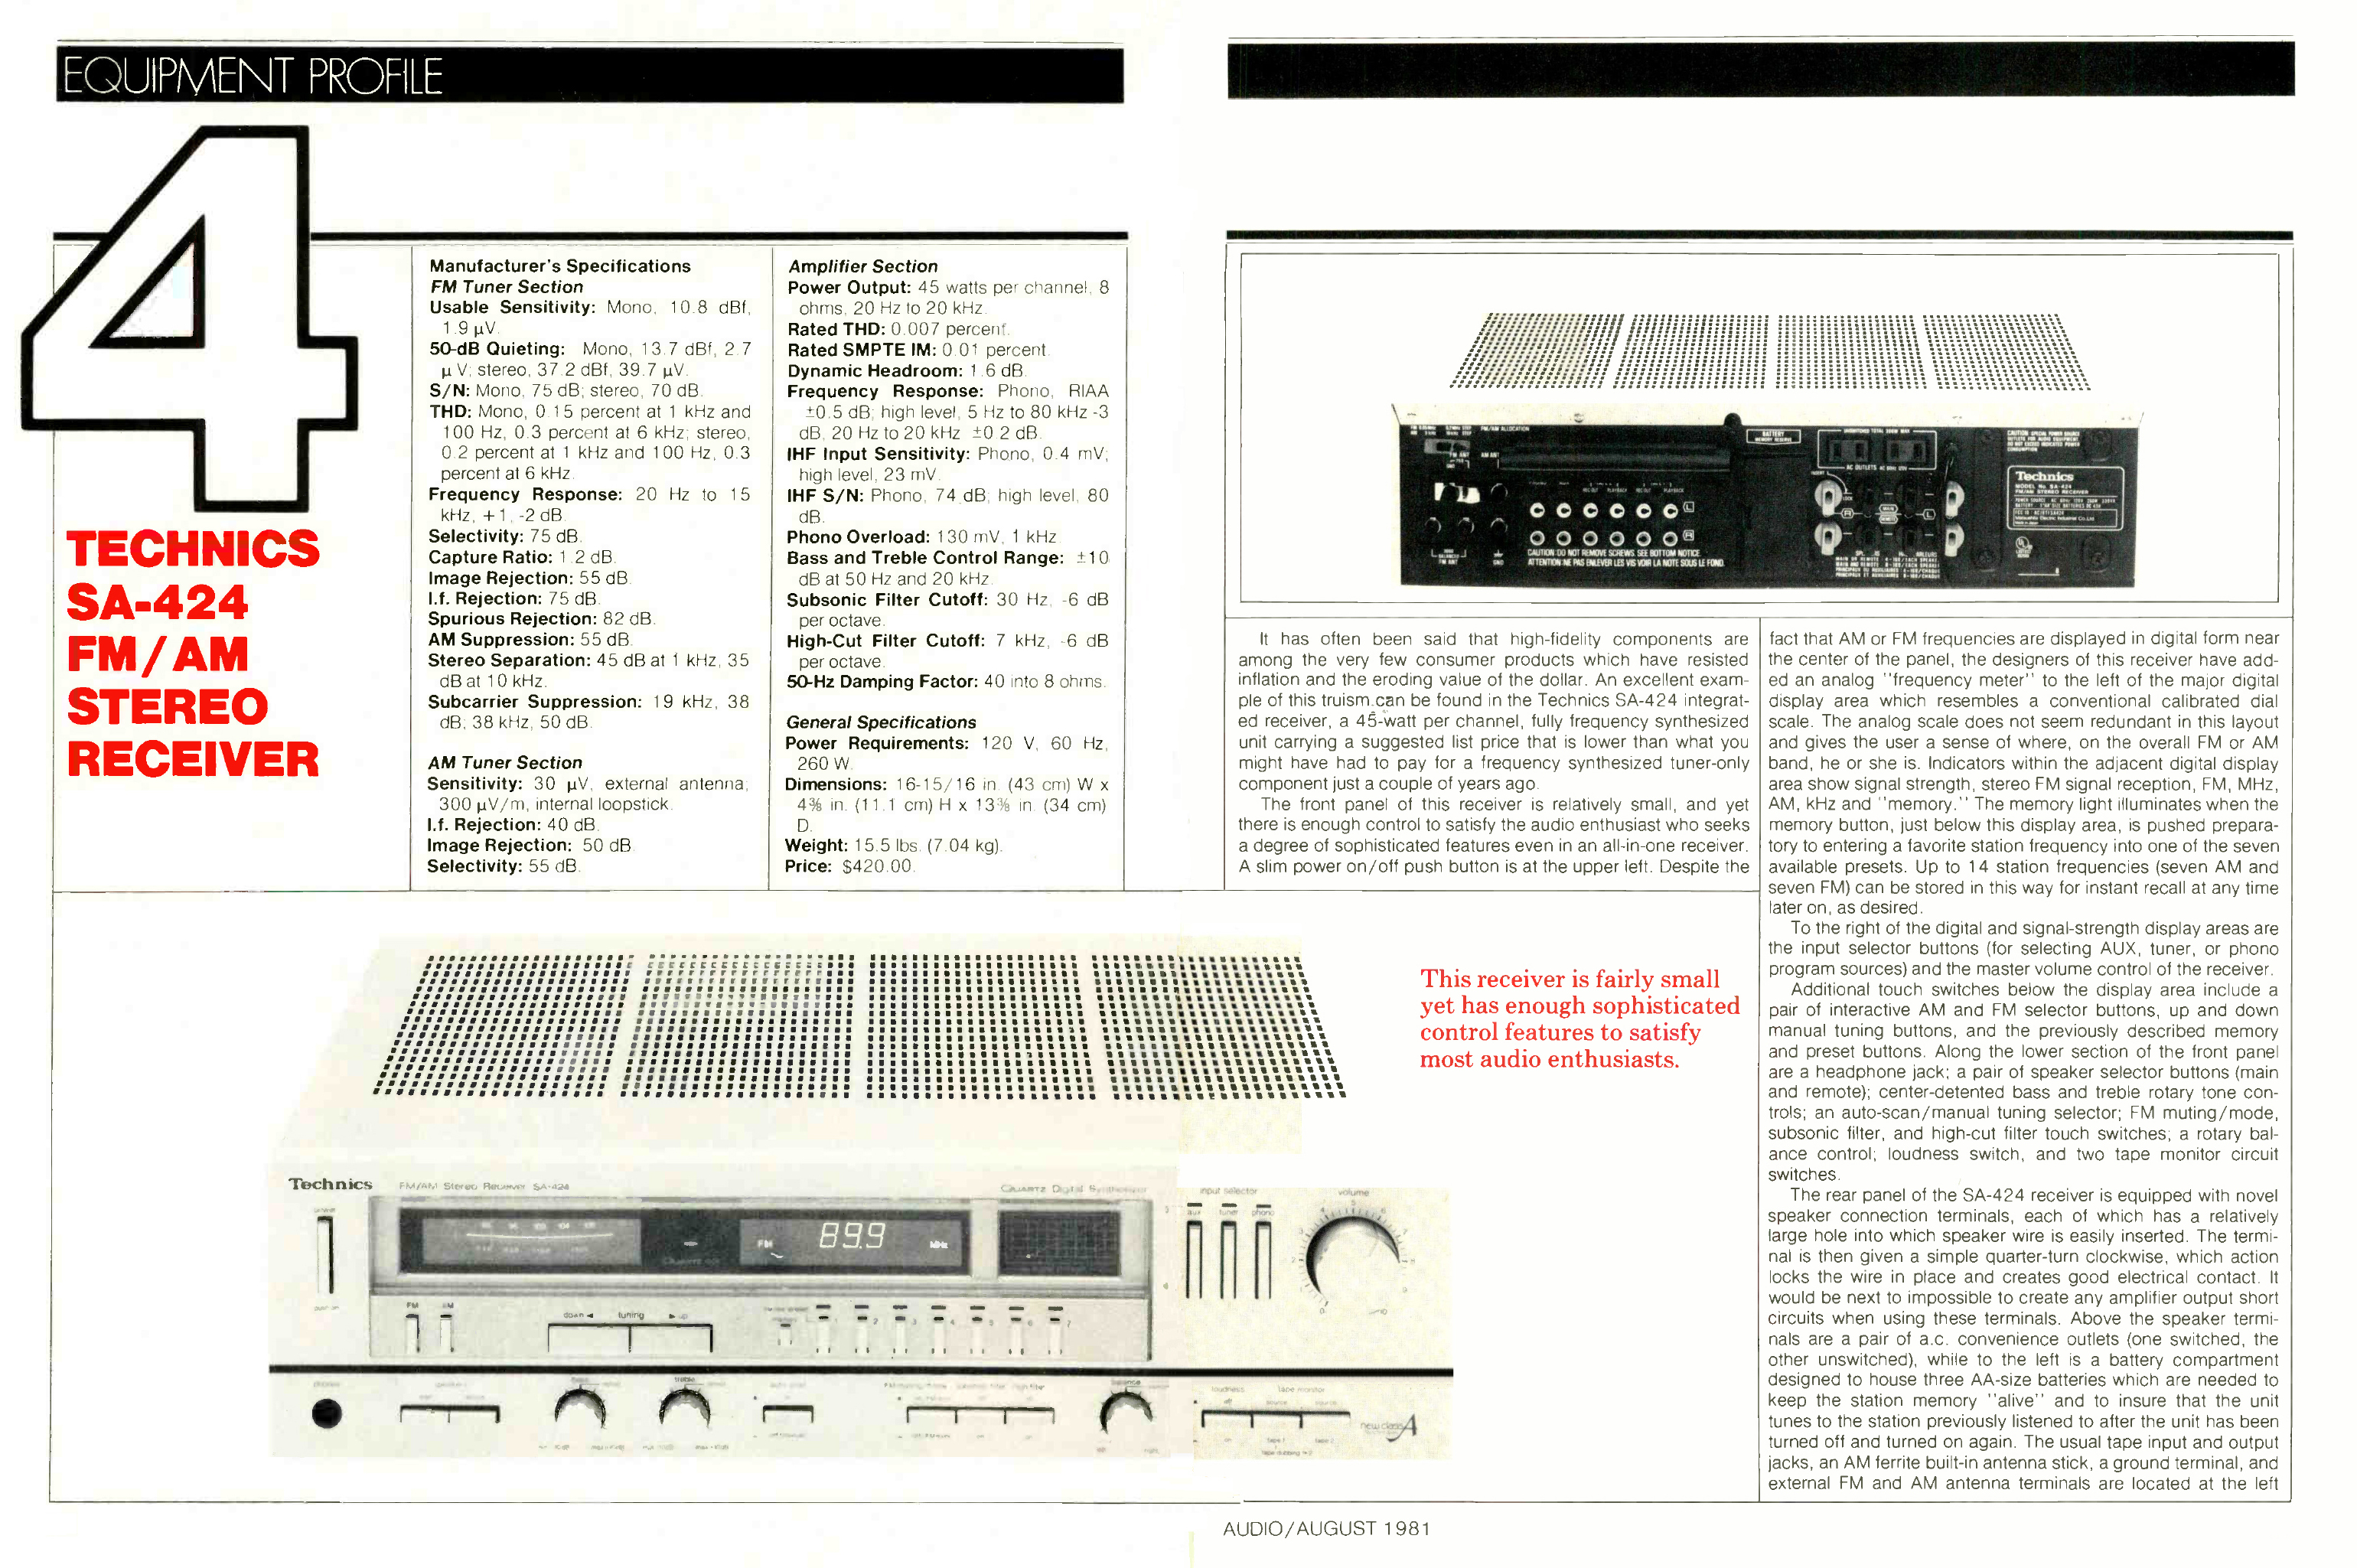 Technics SA-424-Werbung-1981.jpg